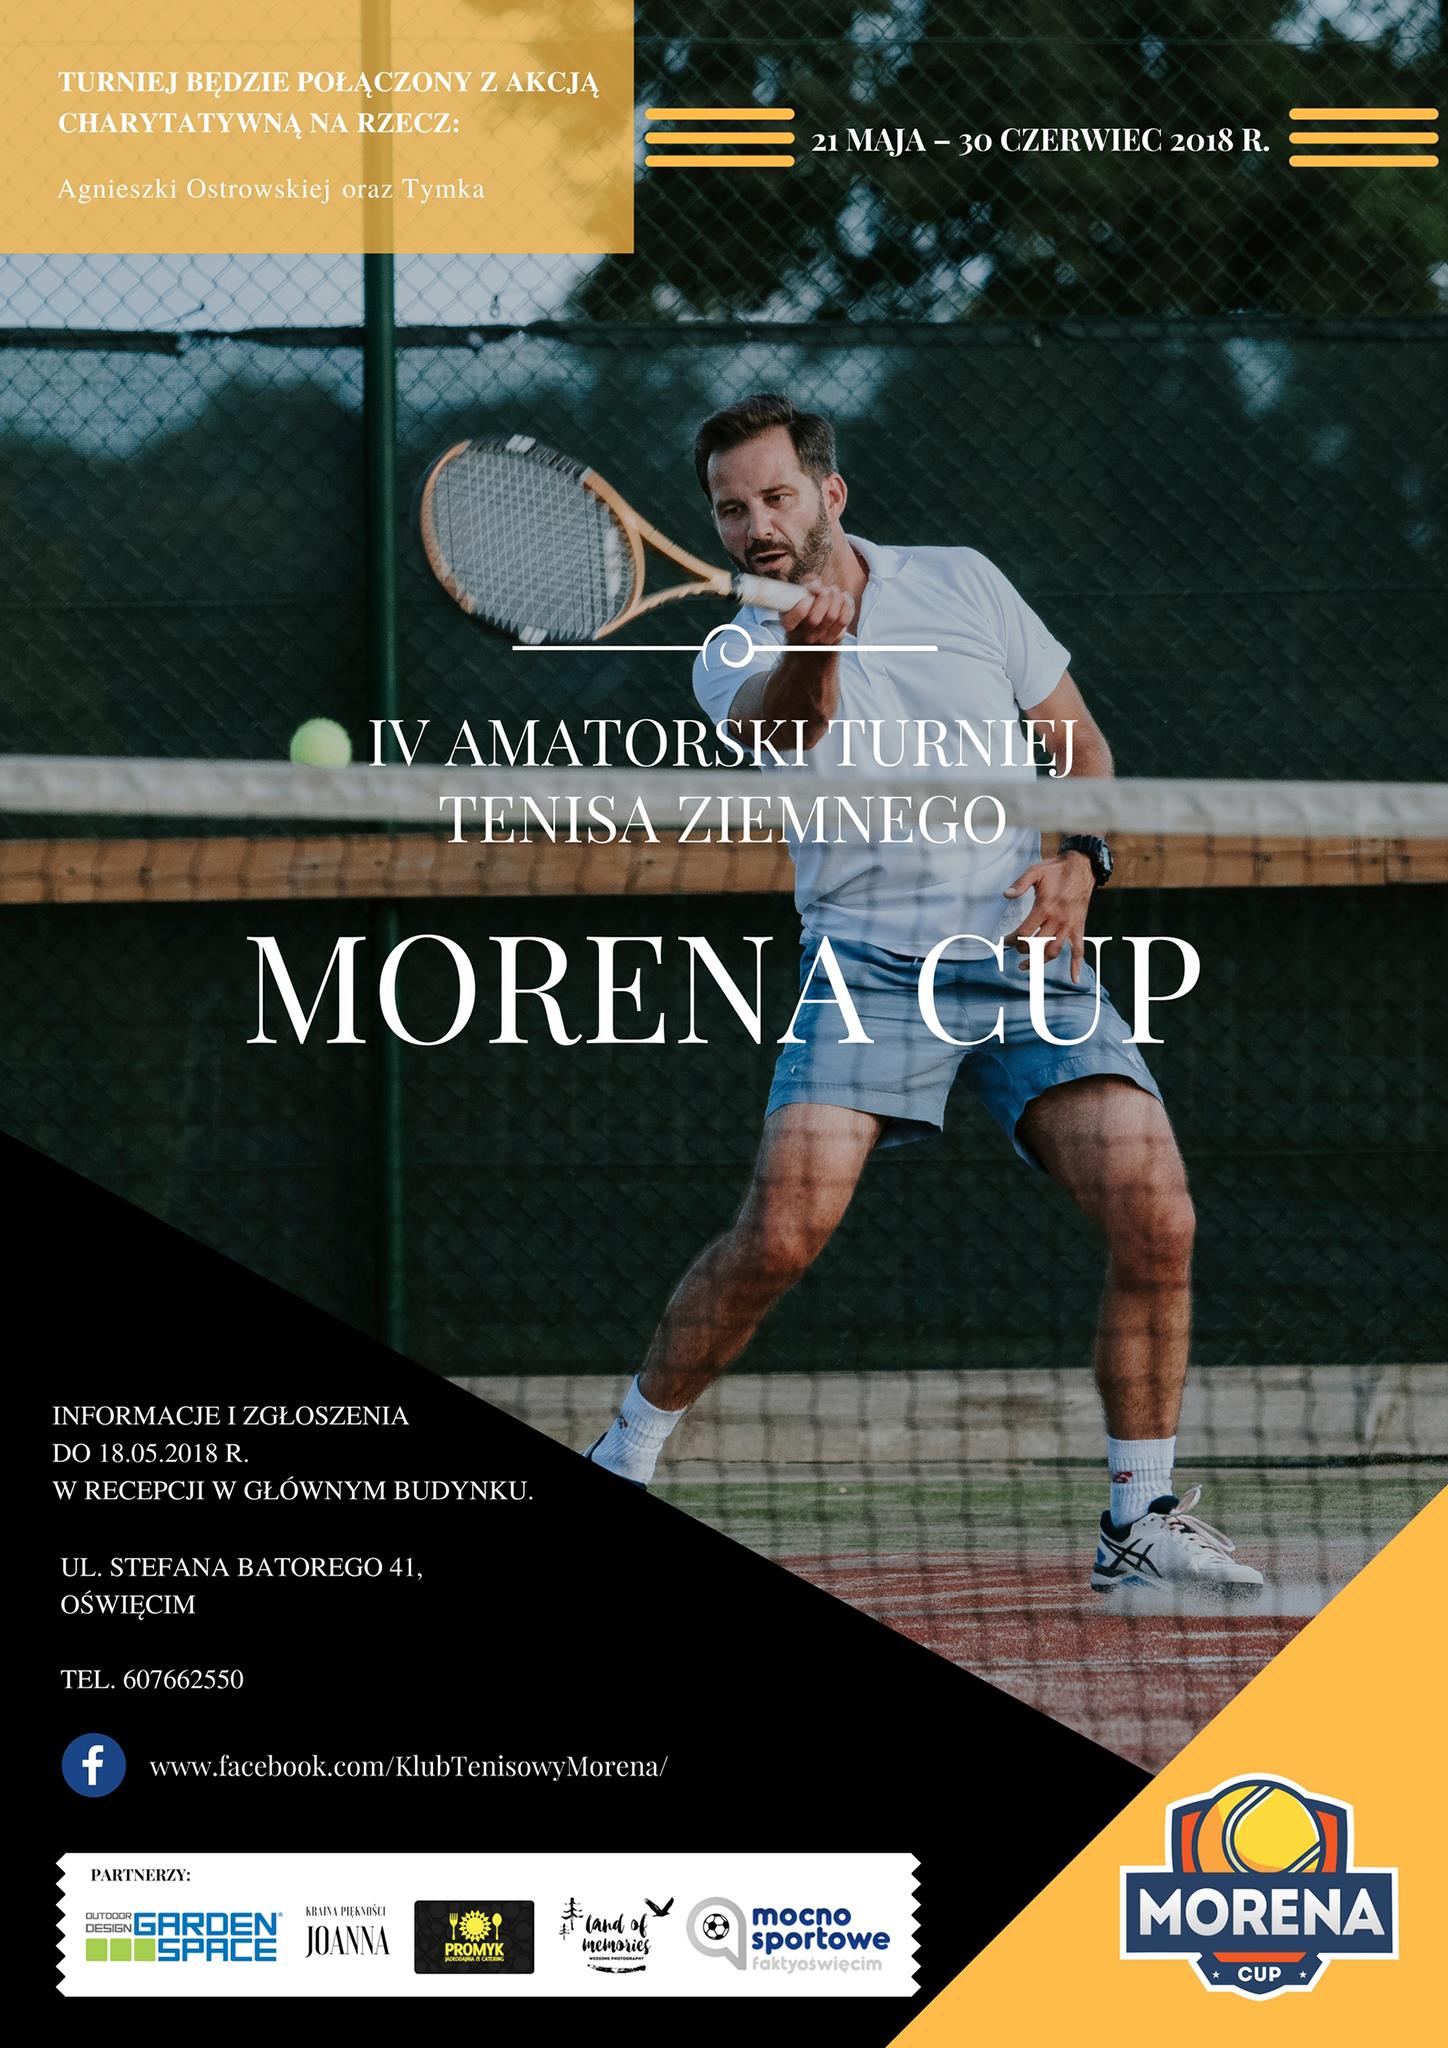 Klub tenisowy Morena w Oświęcimiu organizuje kolejny turniej Moren Cup. Udział w turnieju mogą wziąć kobiety i mężczyźni.